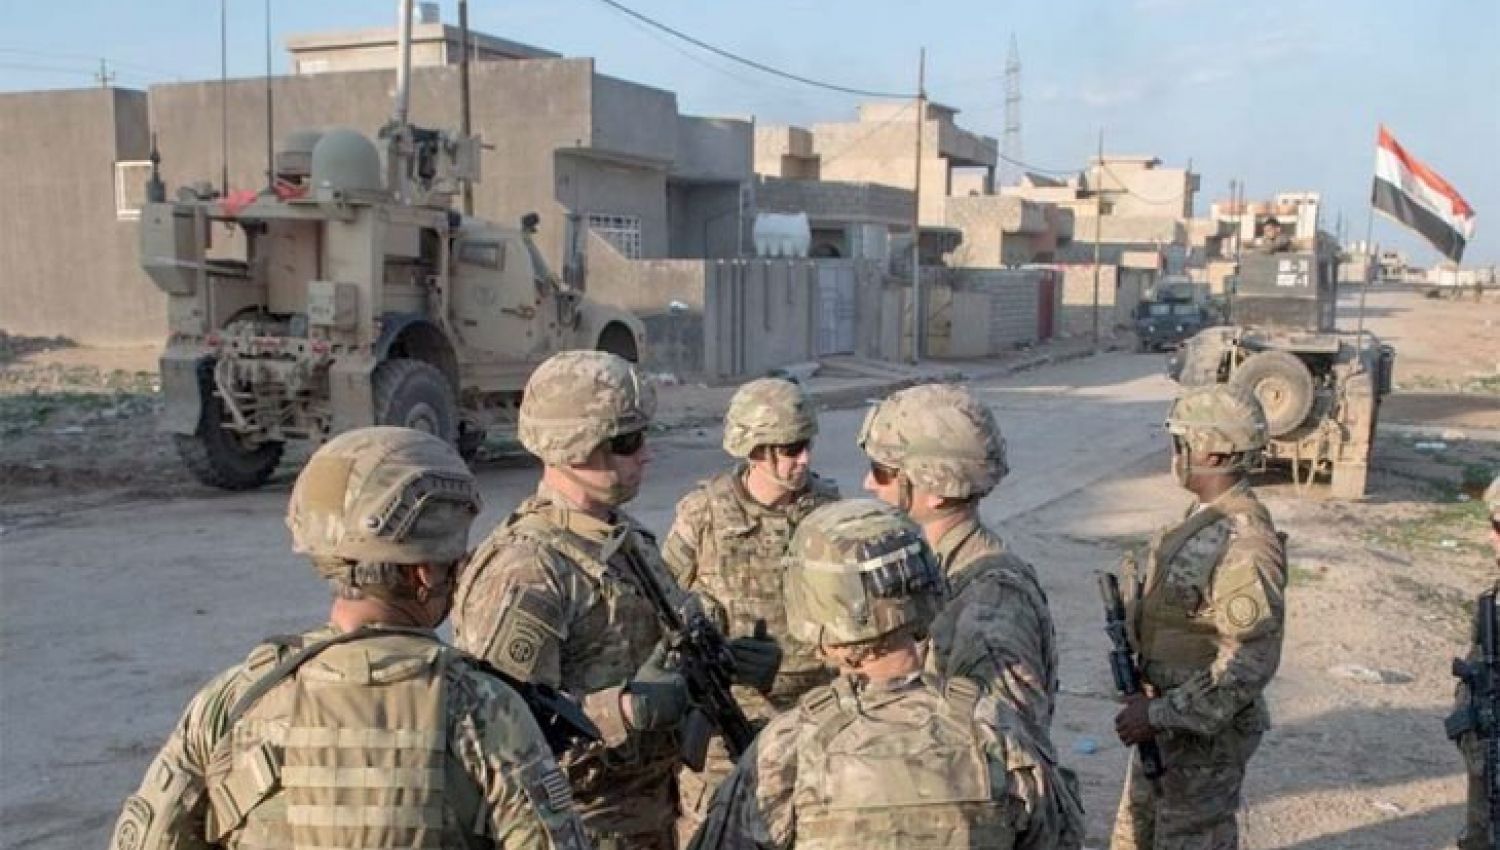  السبب الحقيقي لتغيير مهمة القوات الأميركية في العراق هو تقليص بنك الأهداف المتاحة للمقاومة